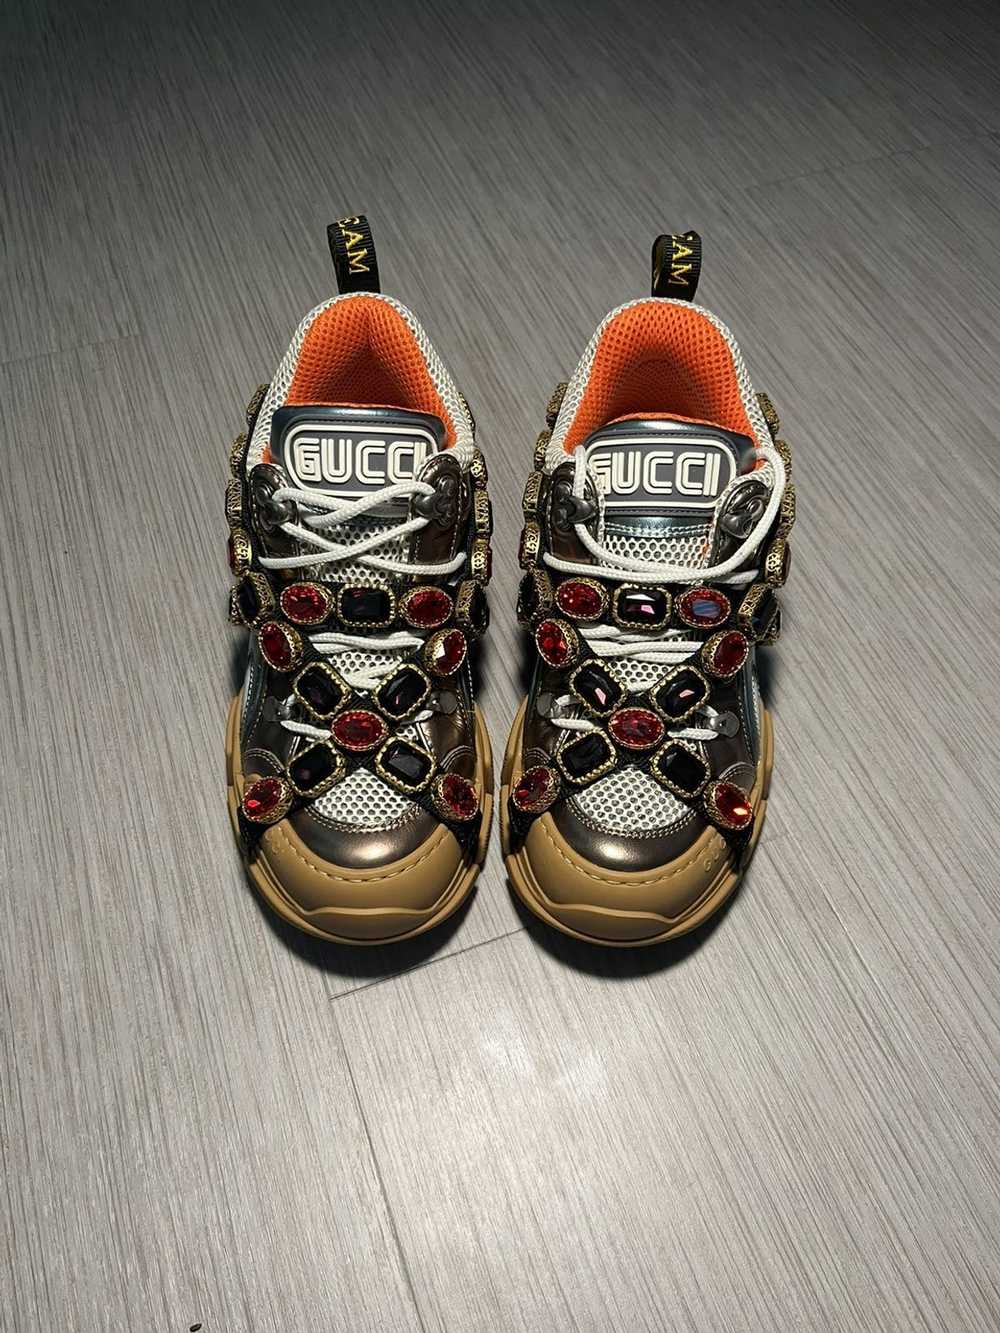 Gucci Gucci flashtrek sneaker - image 2